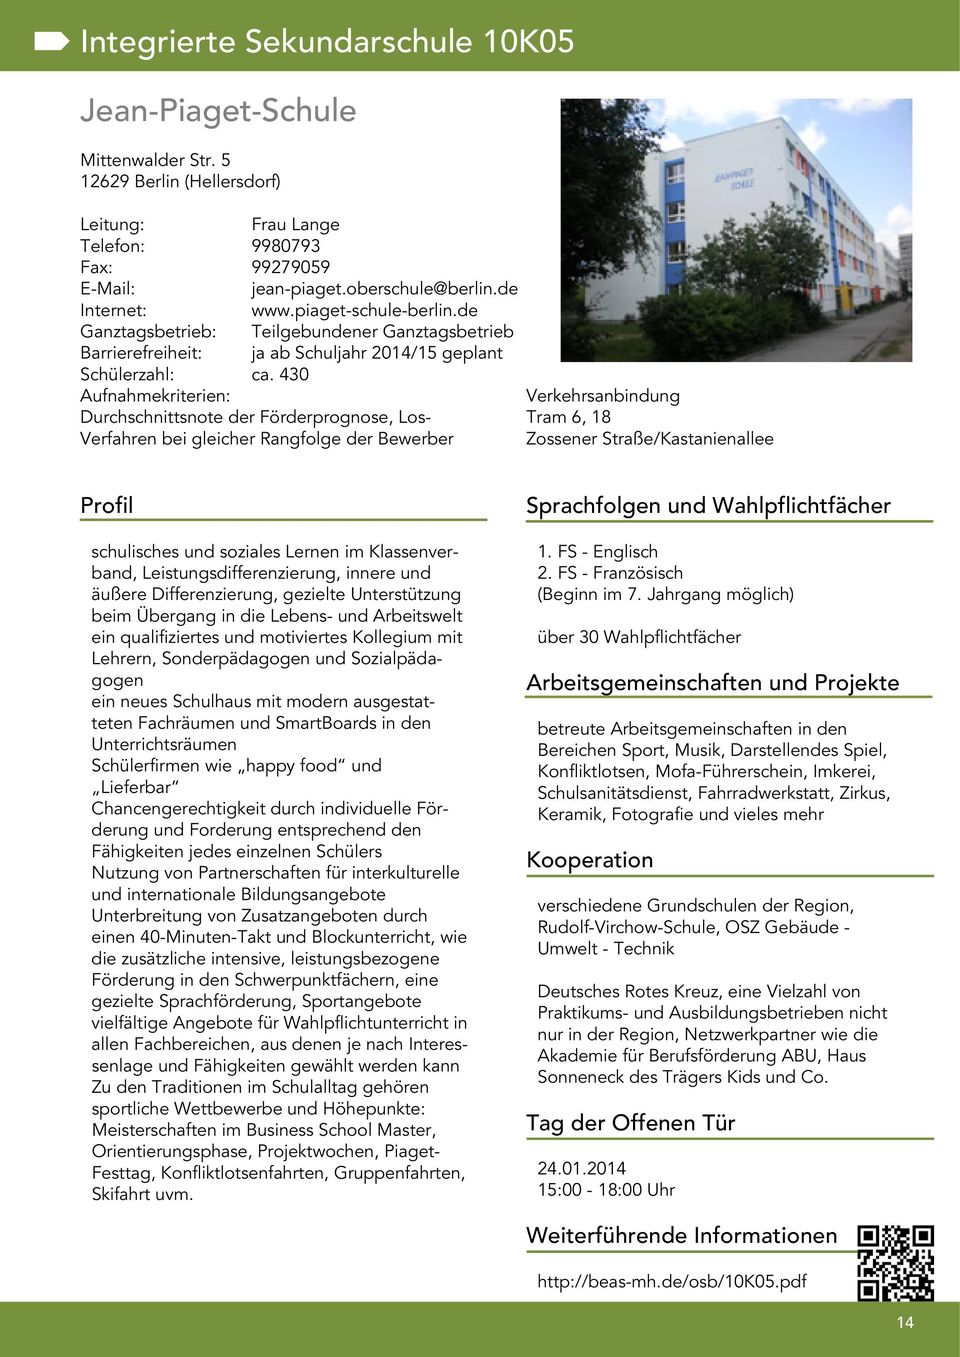 430 Tram 6, 18 Zossener Straße/Kastanienallee schulisches und soziales Lernen im Klassenverband, Leistungsdifferenzierung, innere und äußere Differenzierung, gezielte Unterstützung beim Übergang in